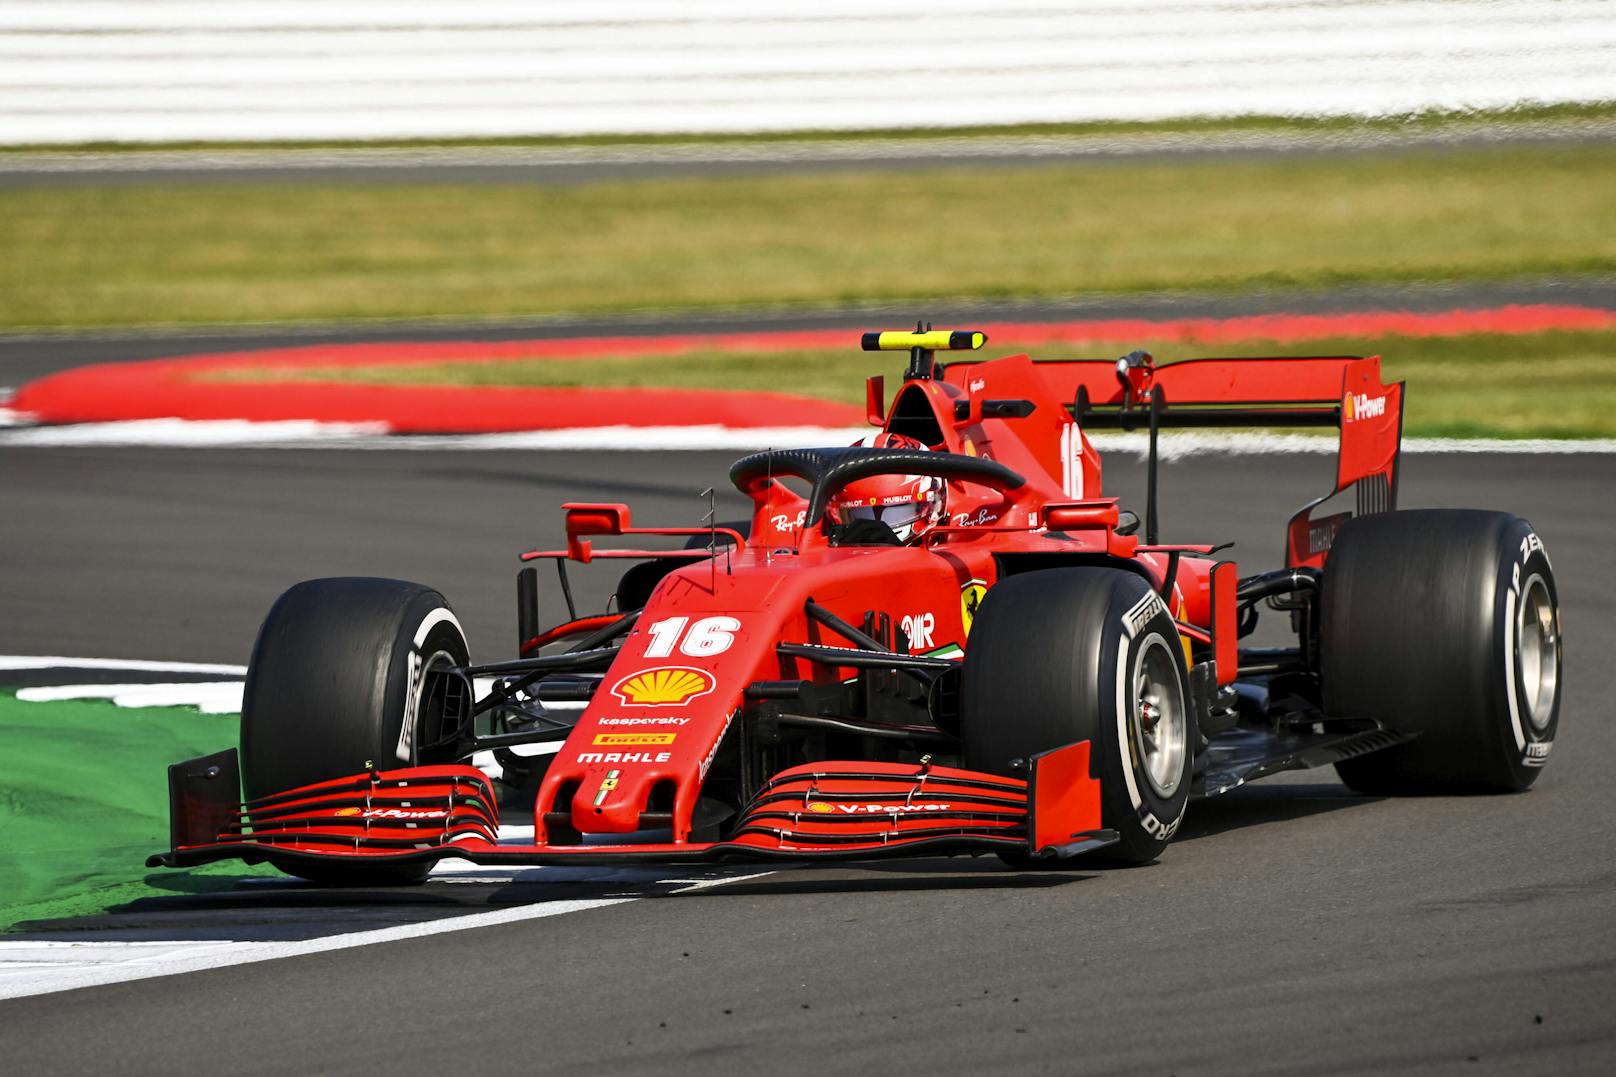 Überraschend auf dem vierten und letzten Rang landet Ferrari mit "nur" 980 PS. Im letzten Jahr hatte die Scuderia noch einen der stärksten Motoren